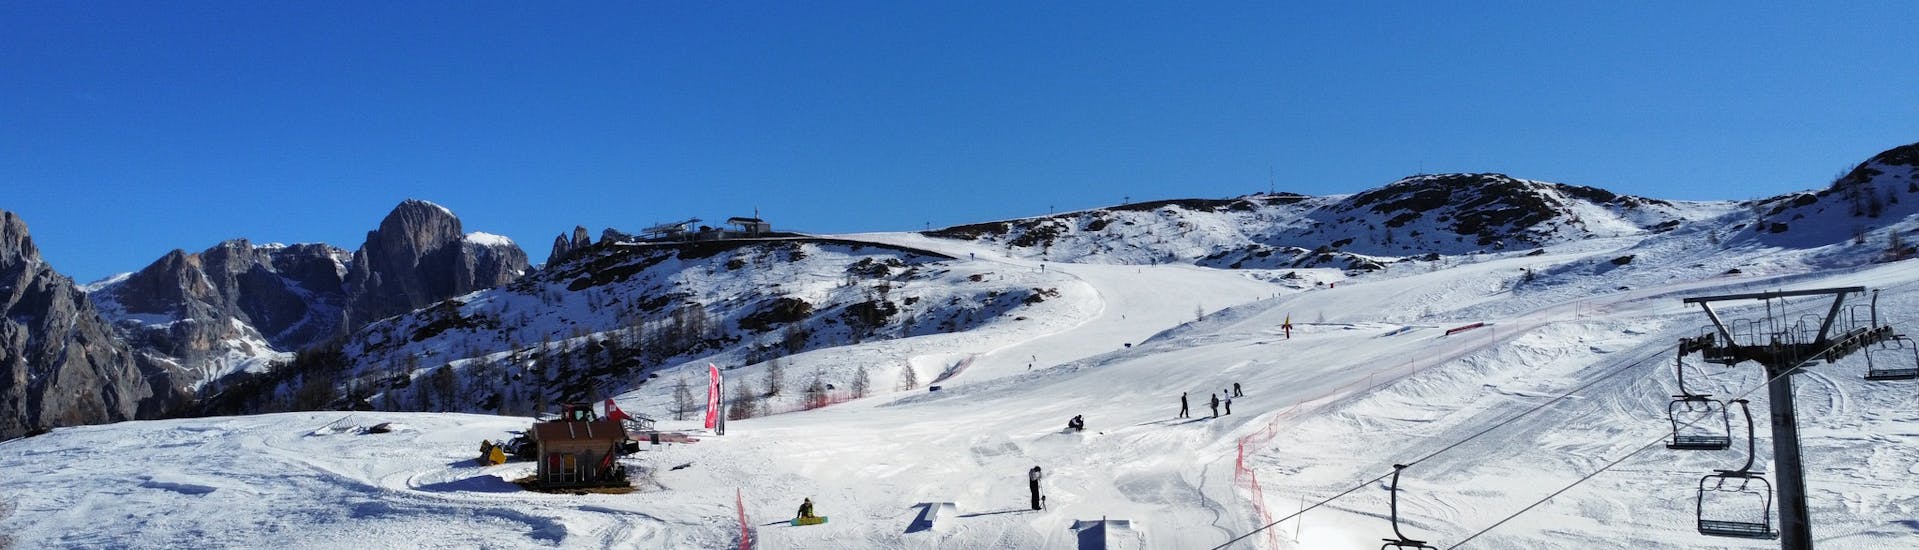 Le snowpark de San Martino di Castrozza, où les rideurs pourront essayer de nouvelles figures pendant les cours particuliers de snowboard pour tous les niveaux avec la Scuola Italiana Sci Dolomiti San Martino di Castrozza.